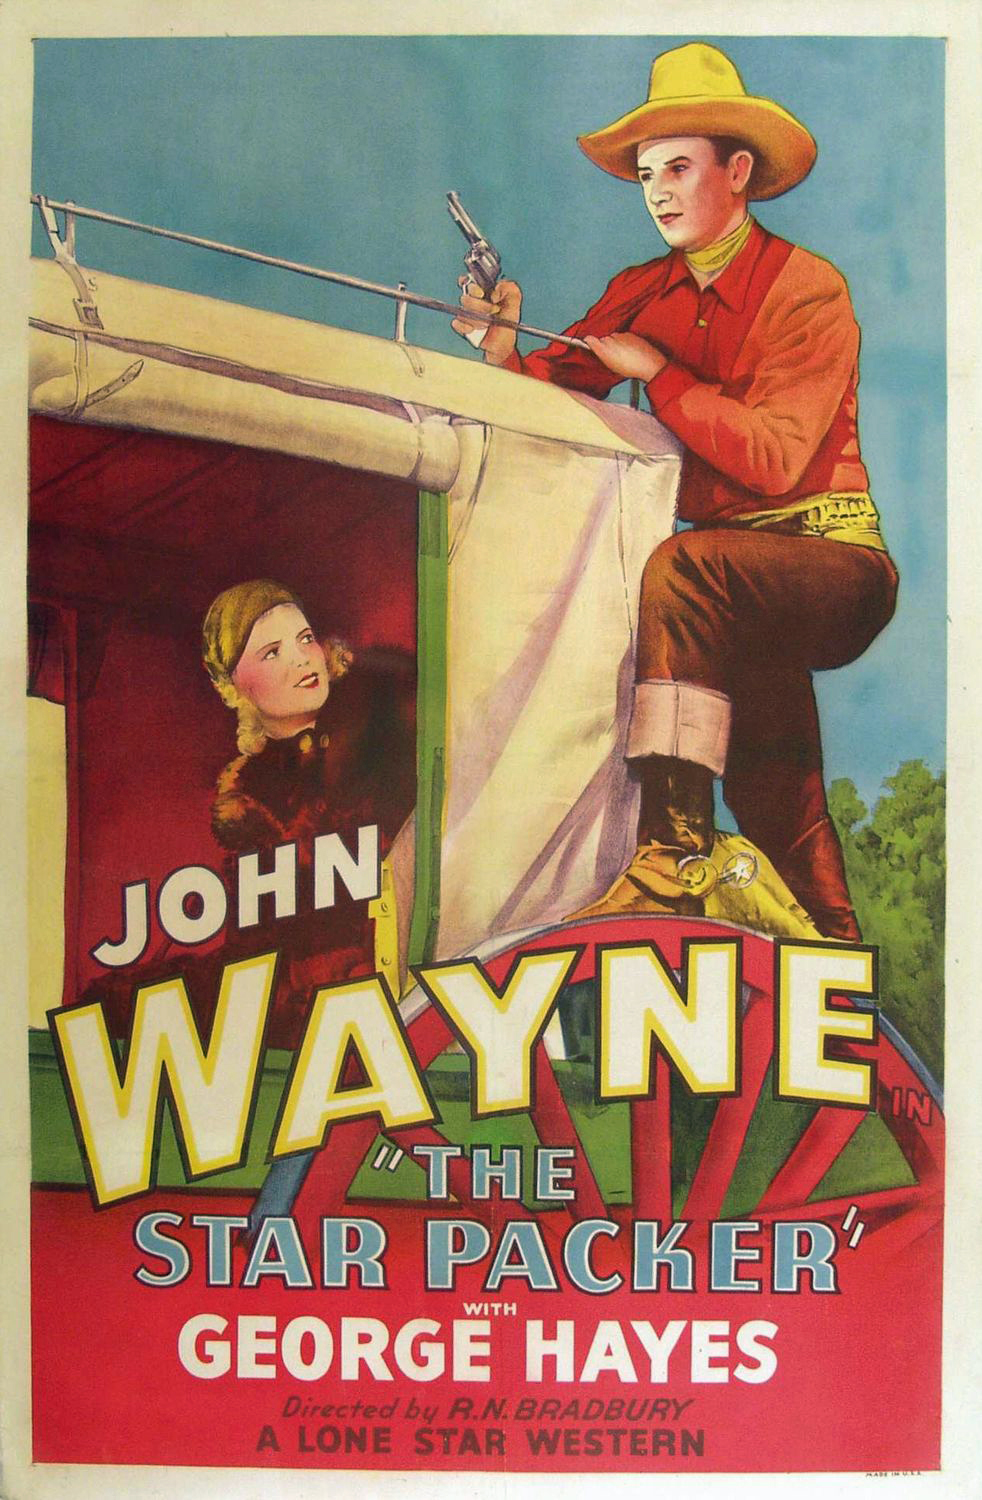 Beyond The Border [1925]